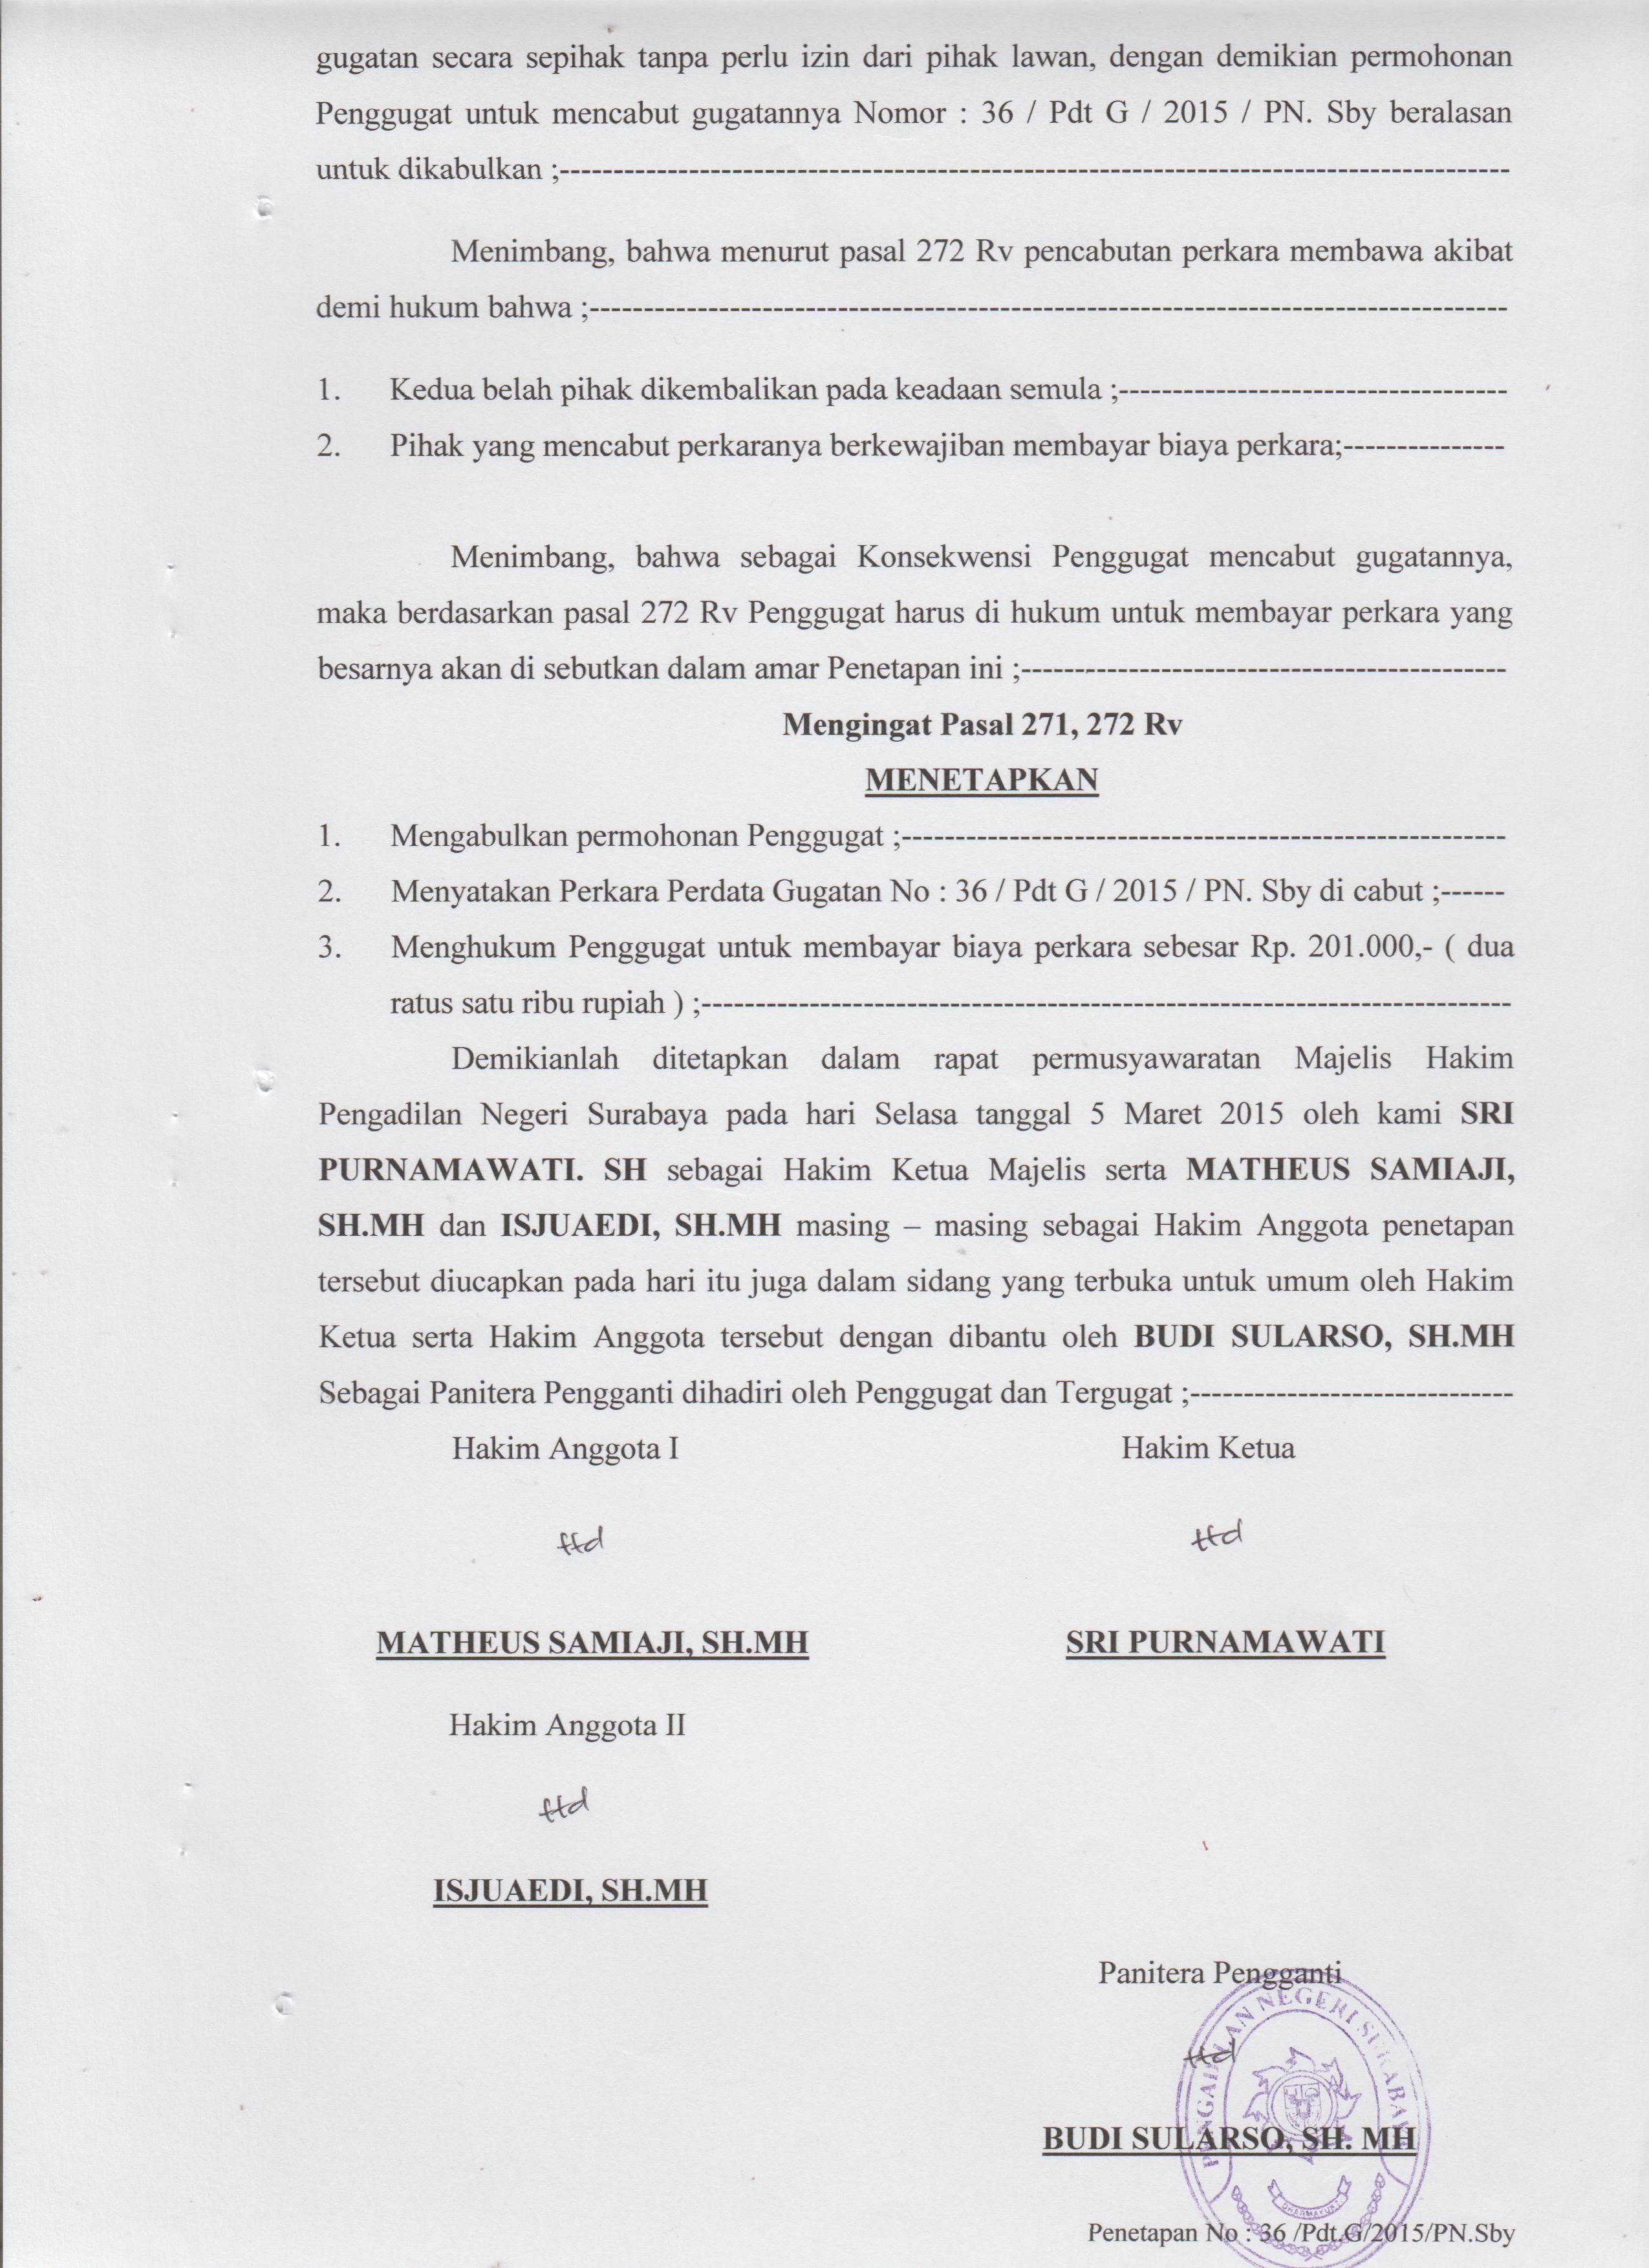 Salinan Putusan Pengadilan Negeri Surabaya Hendro Kusumo